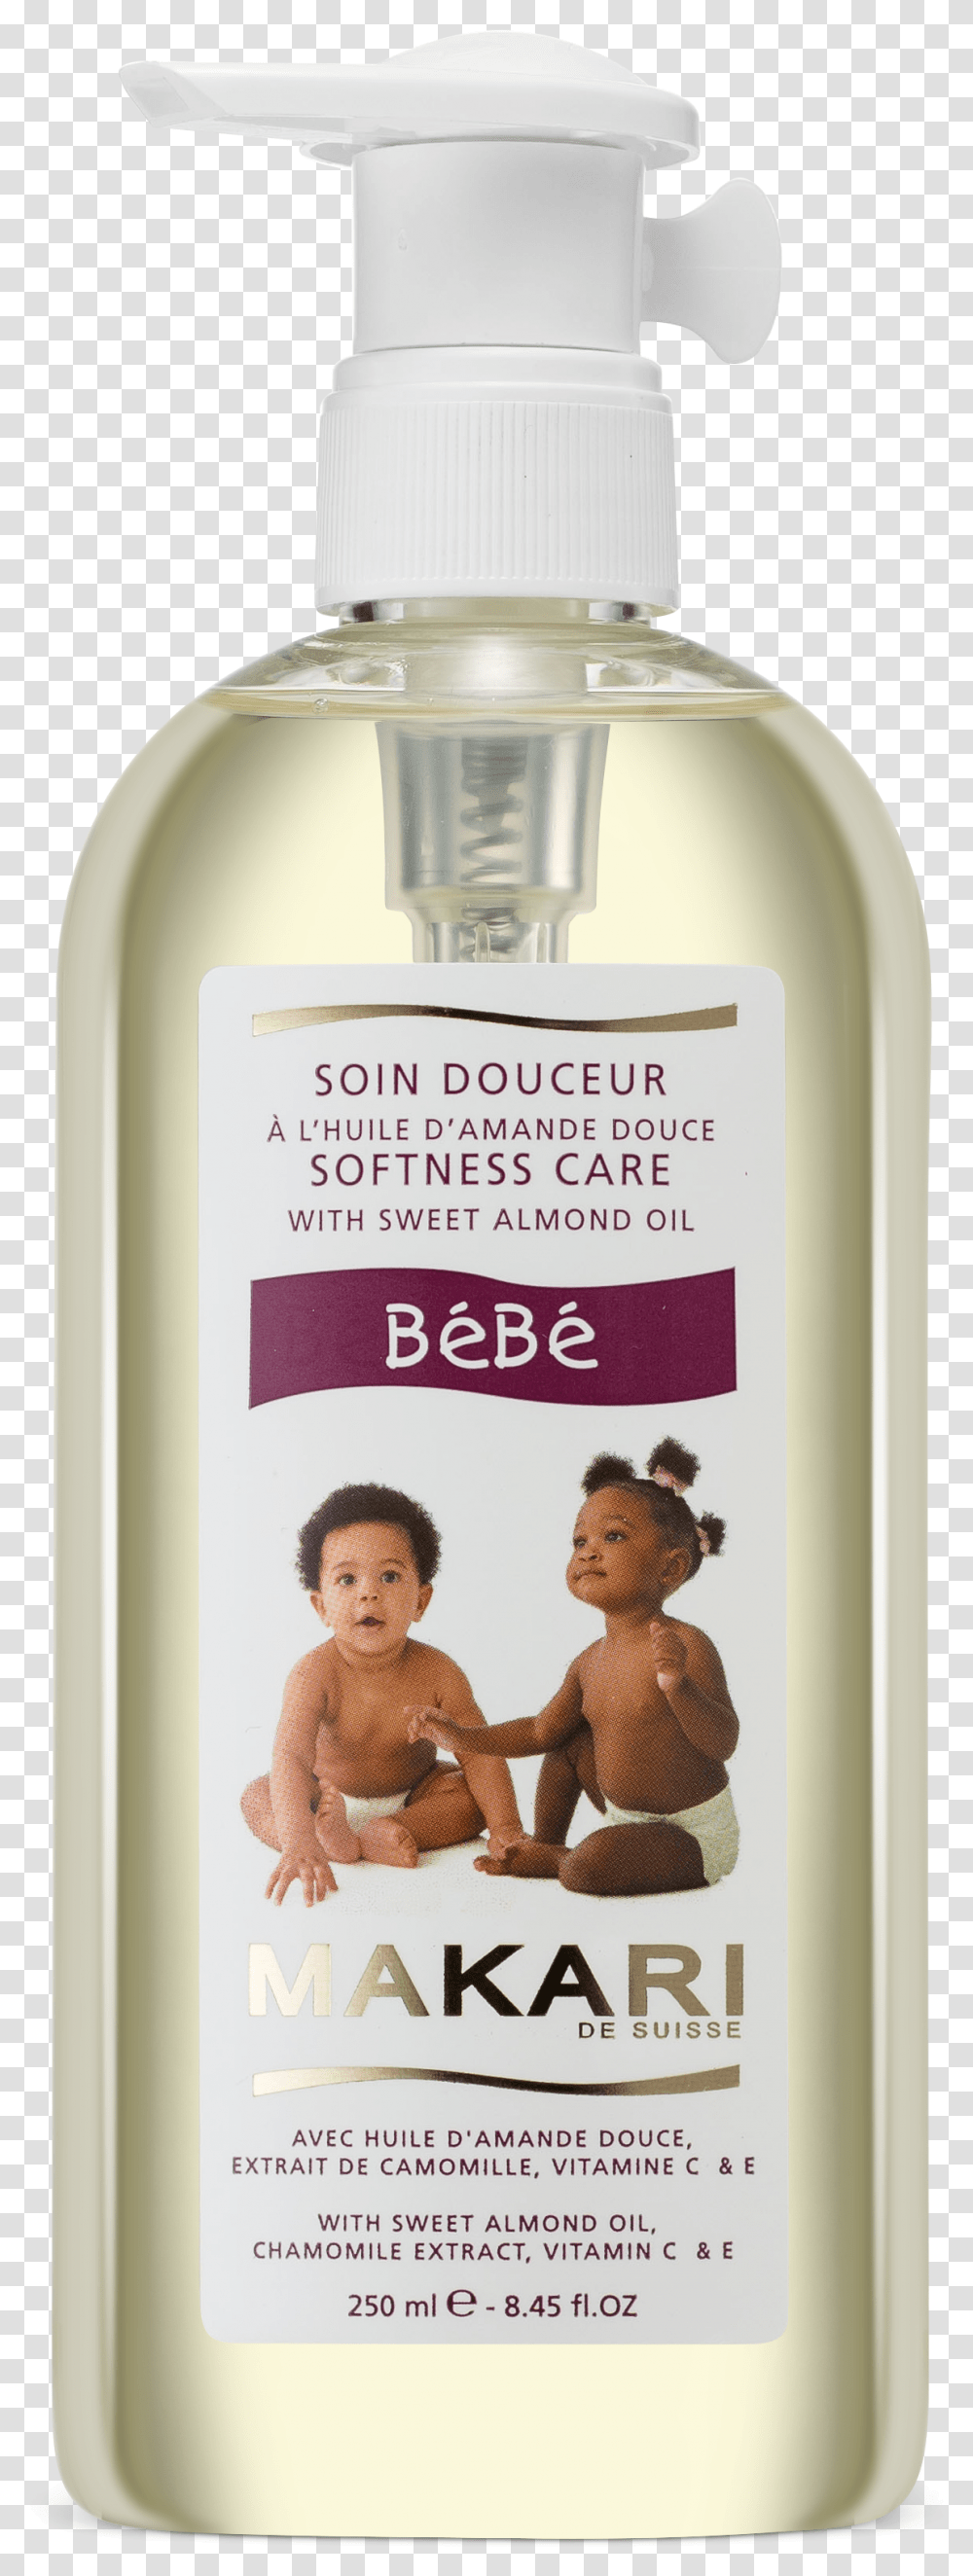 Bebe OilTitle Bebe Oil, Bottle, Person, Human, Liquor Transparent Png